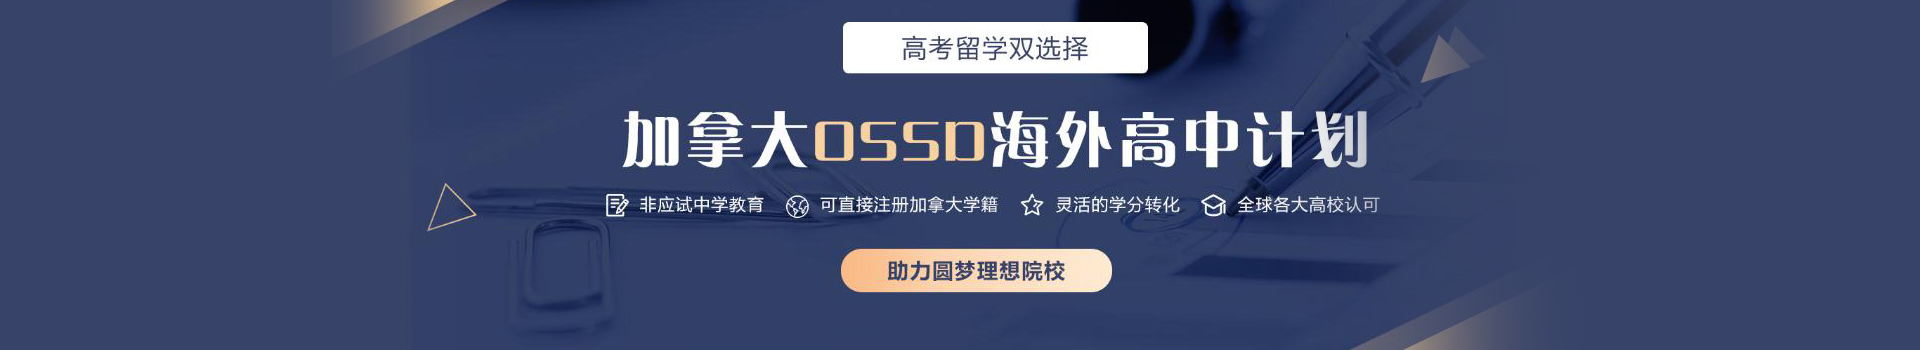 郑州新航道OSSD课程